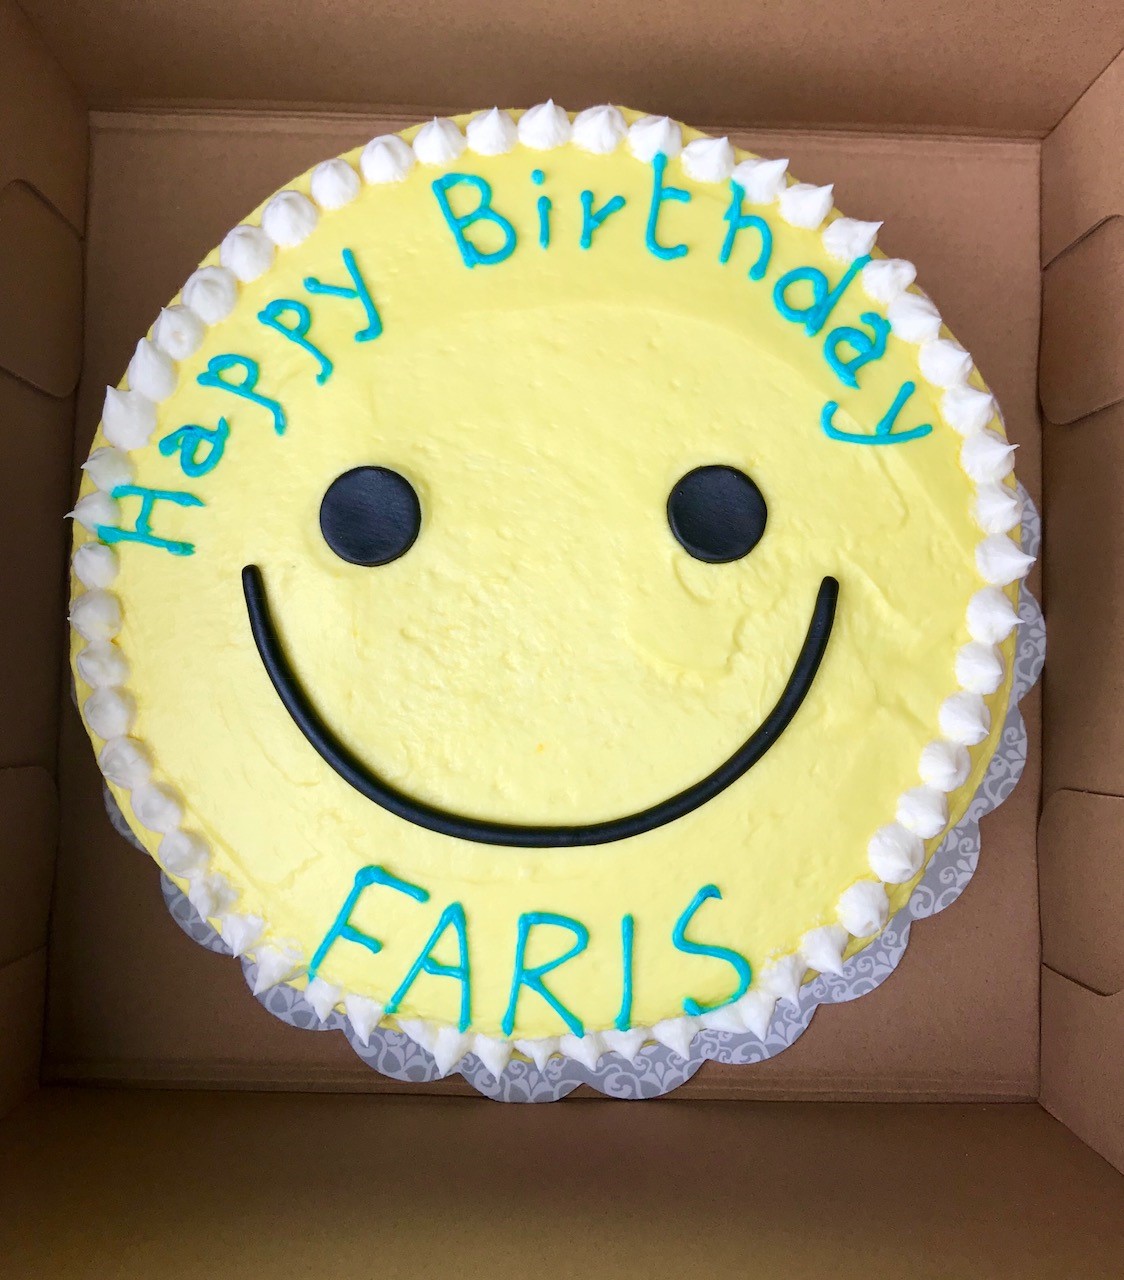 Faris Happy Face Cake.jpg